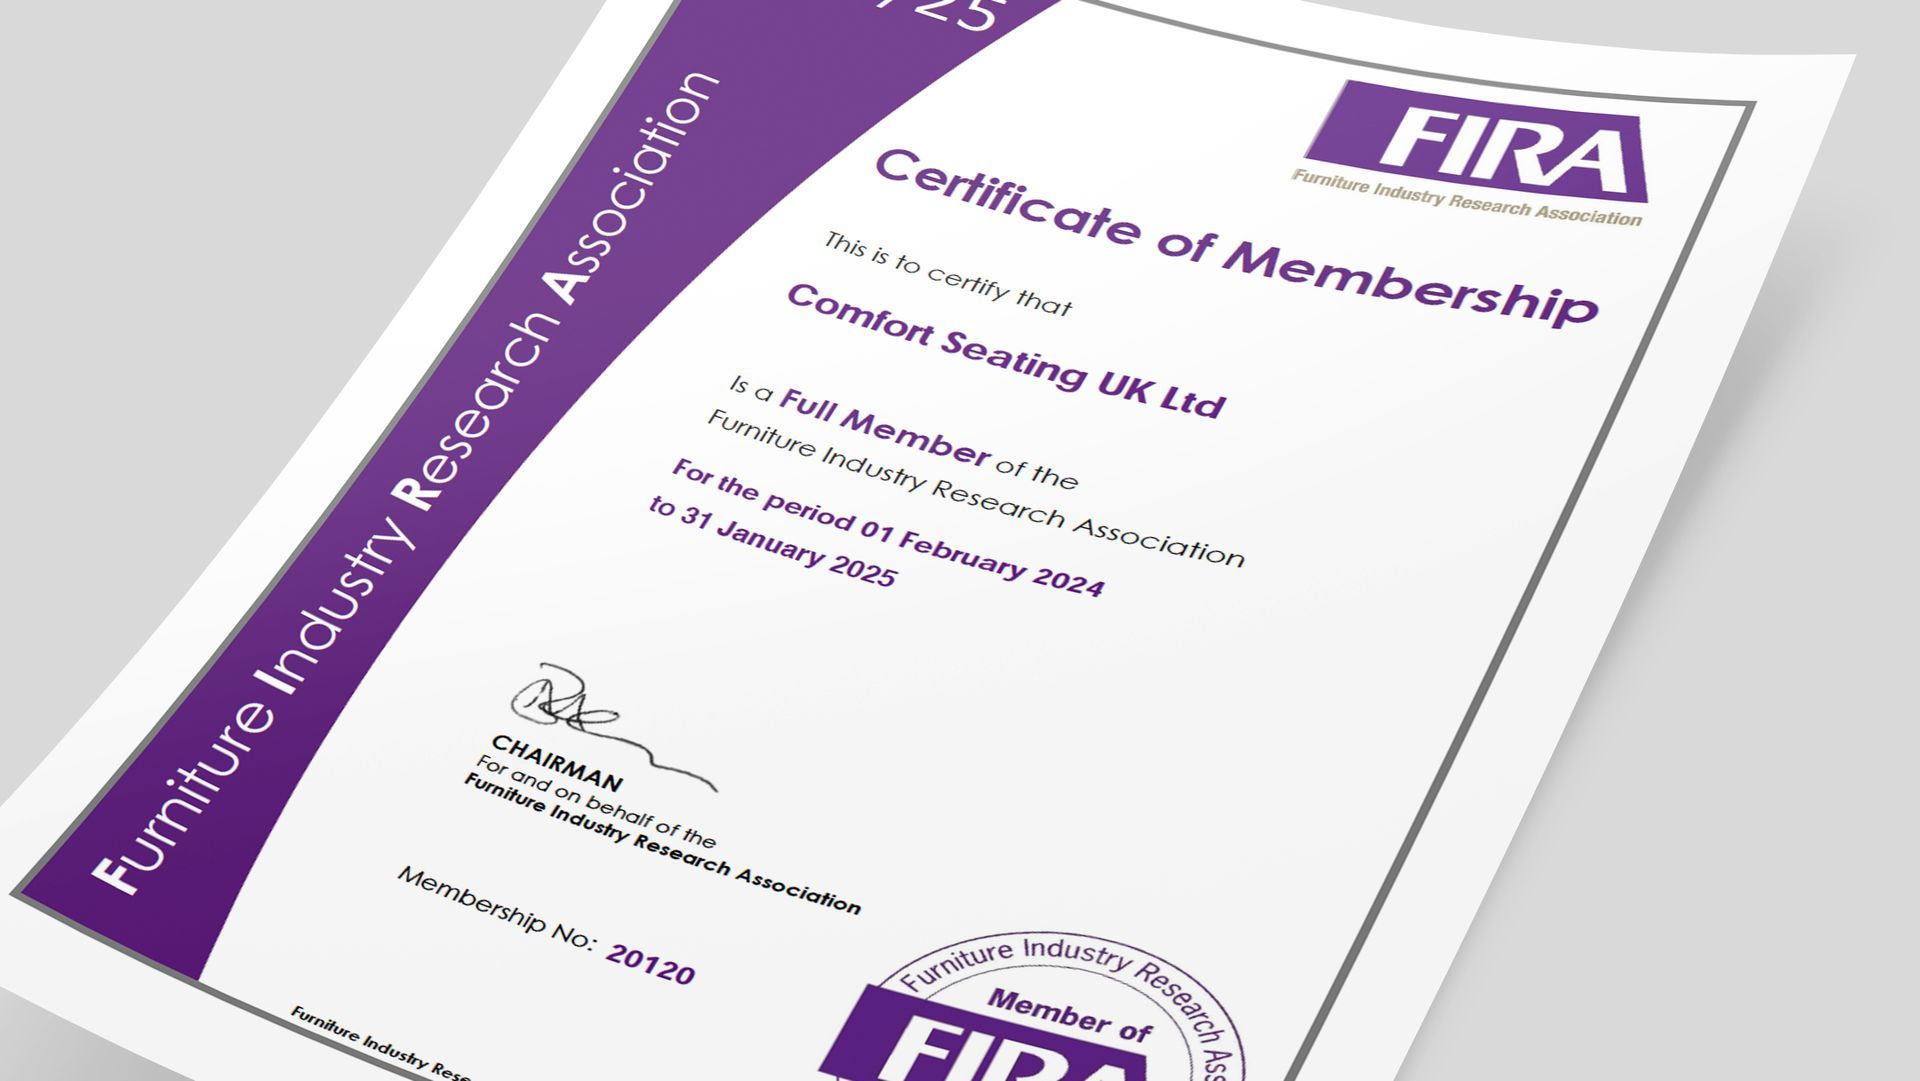 Certificate of FIRA membership for Comfort Seating UK Ltd